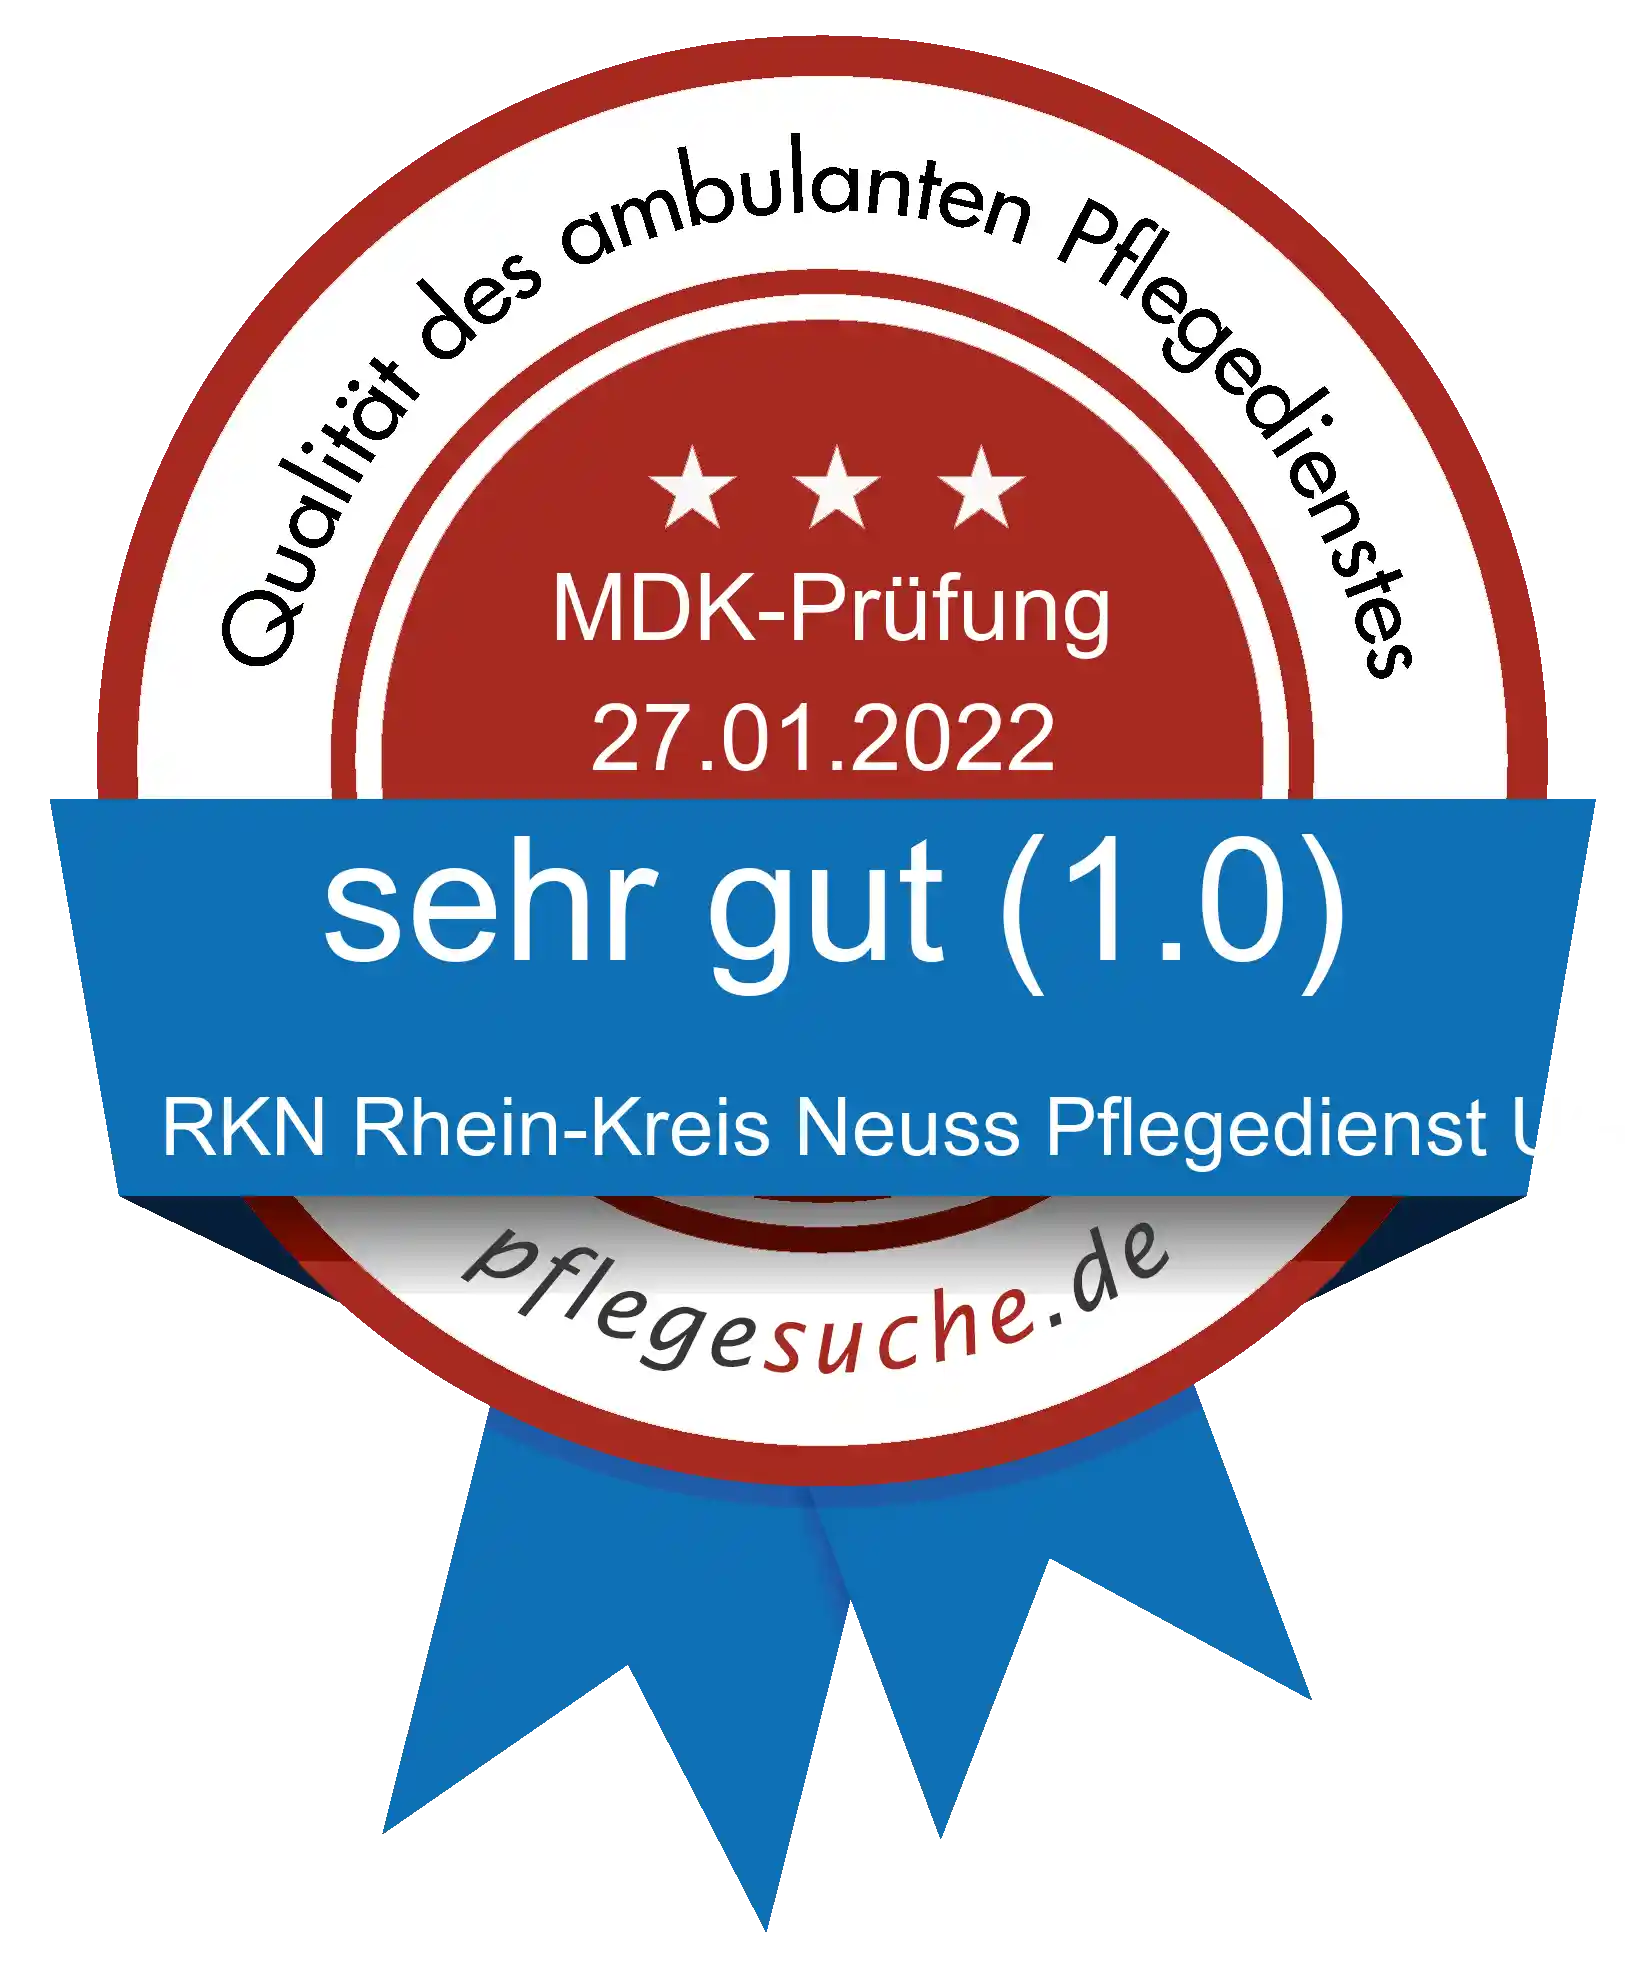 Siegel Benotung RKN Rhein-Kreis Neuss Pflegedienst UG